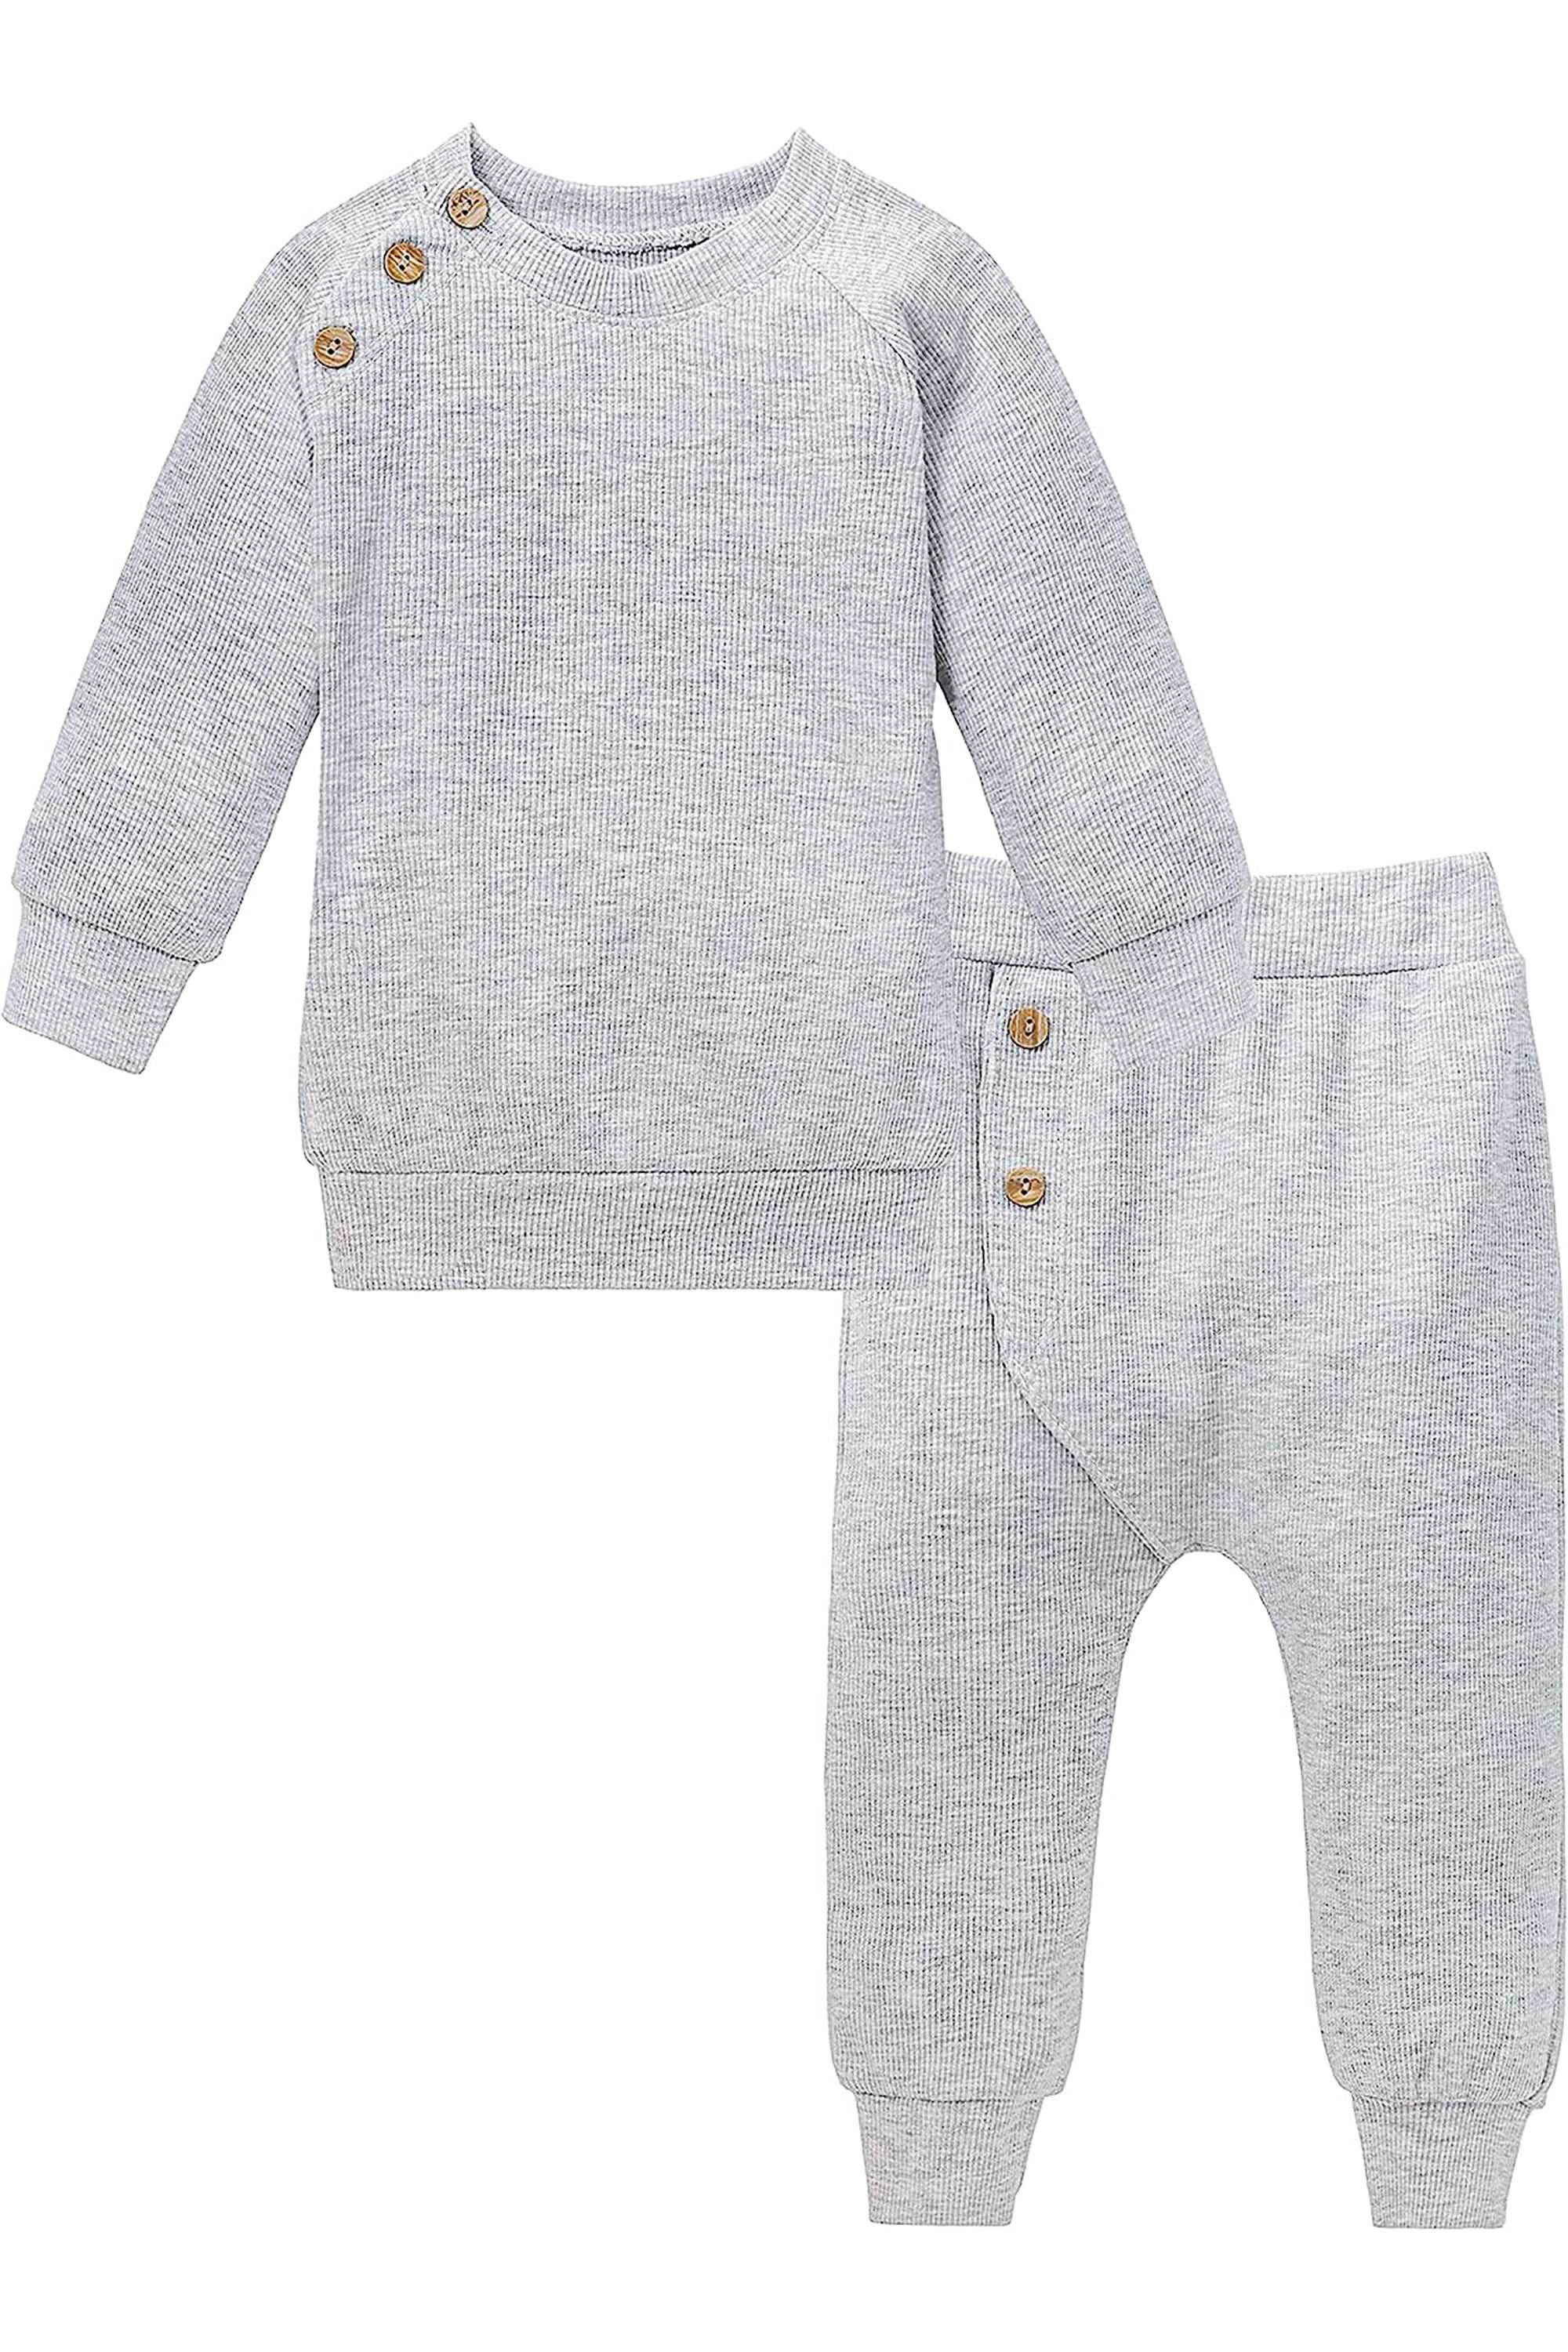 Baby Boy clothing set